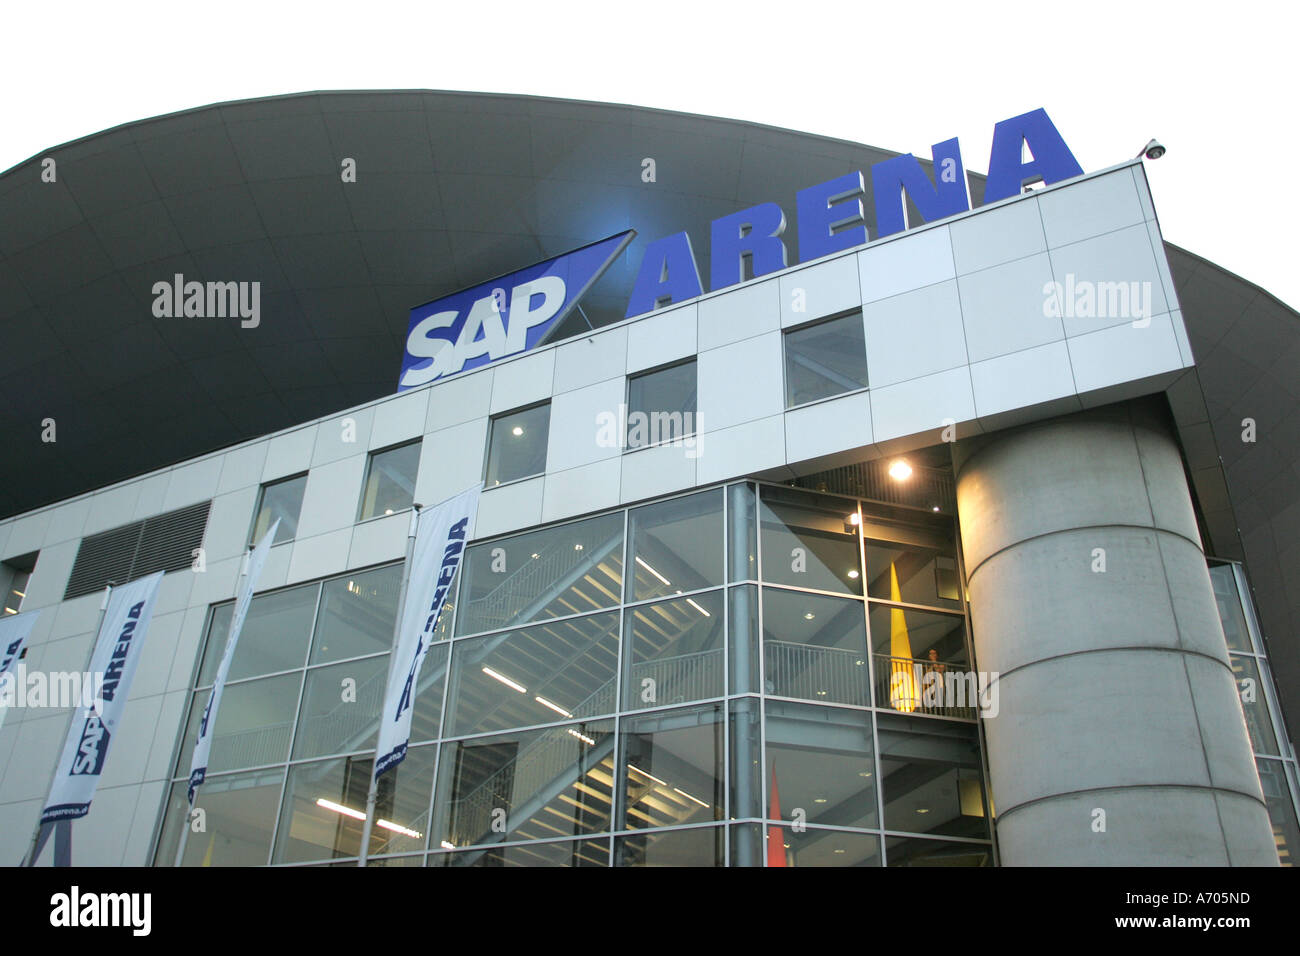 09.02.2005 DEU, Mannheim, SAP arena Stock Photo